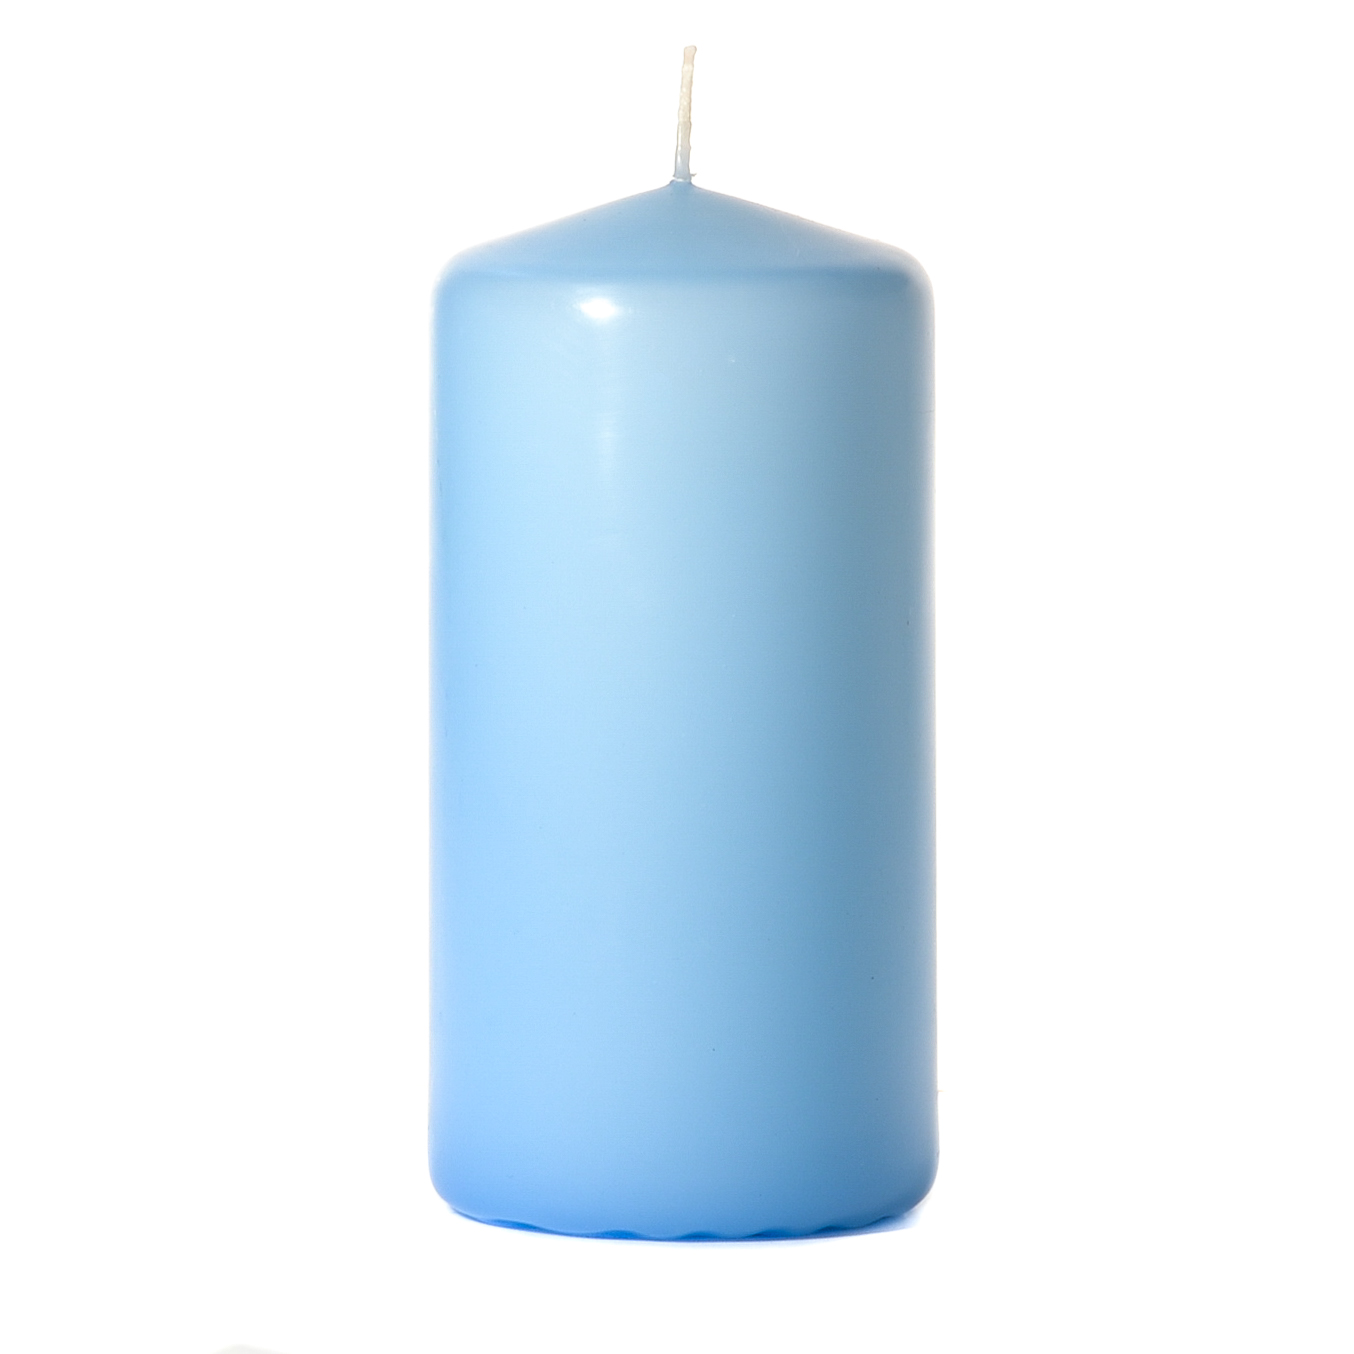 3x6 Light Blue Pillar Candles Unscented